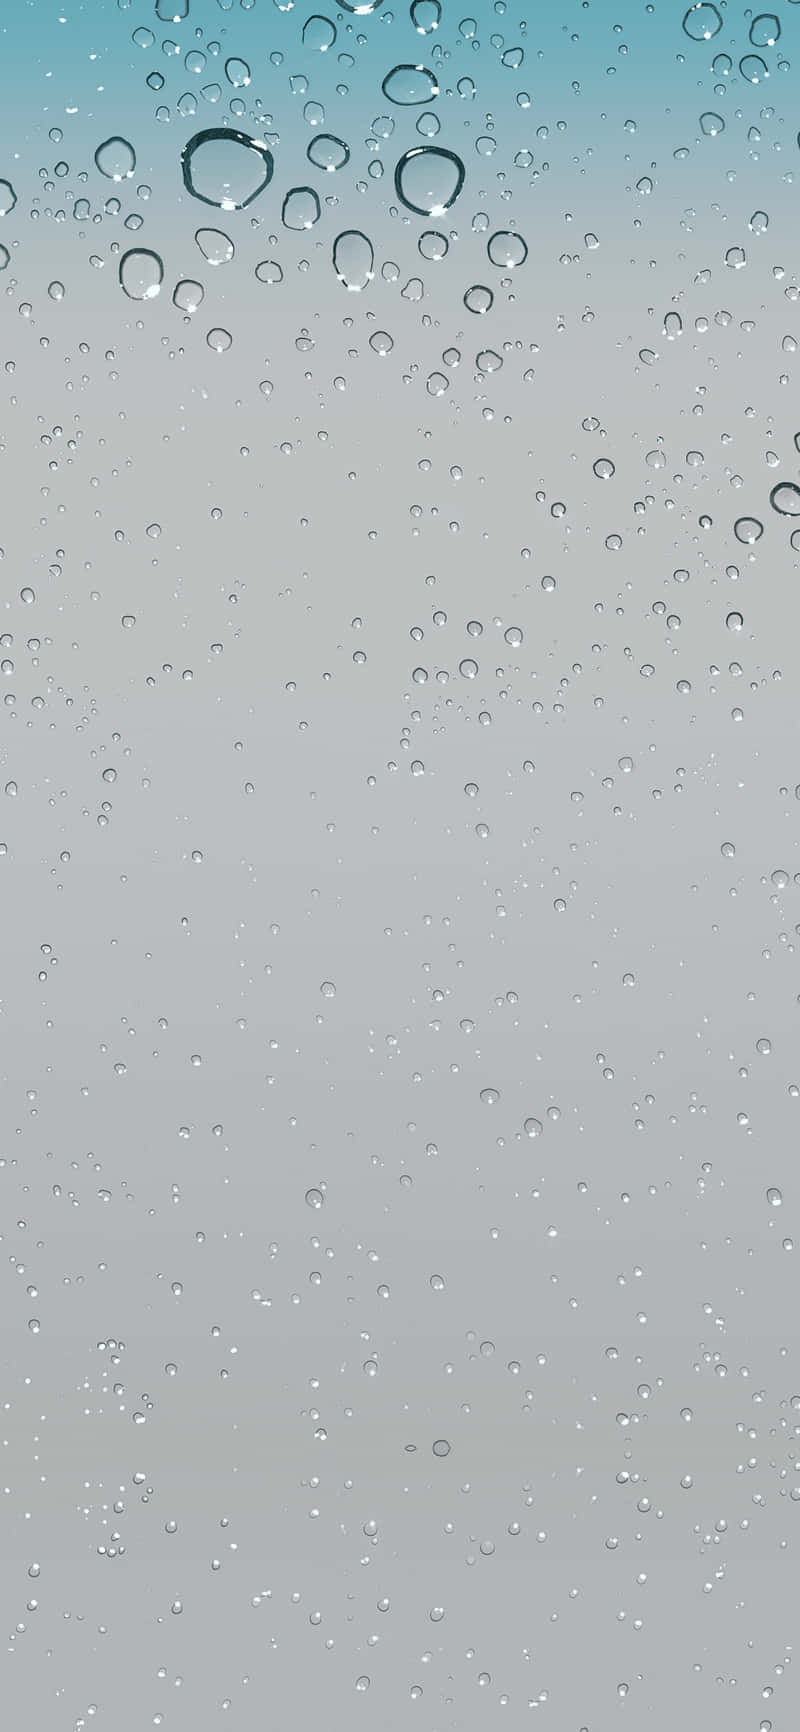 Vand dråber på et glas vindue Wallpaper